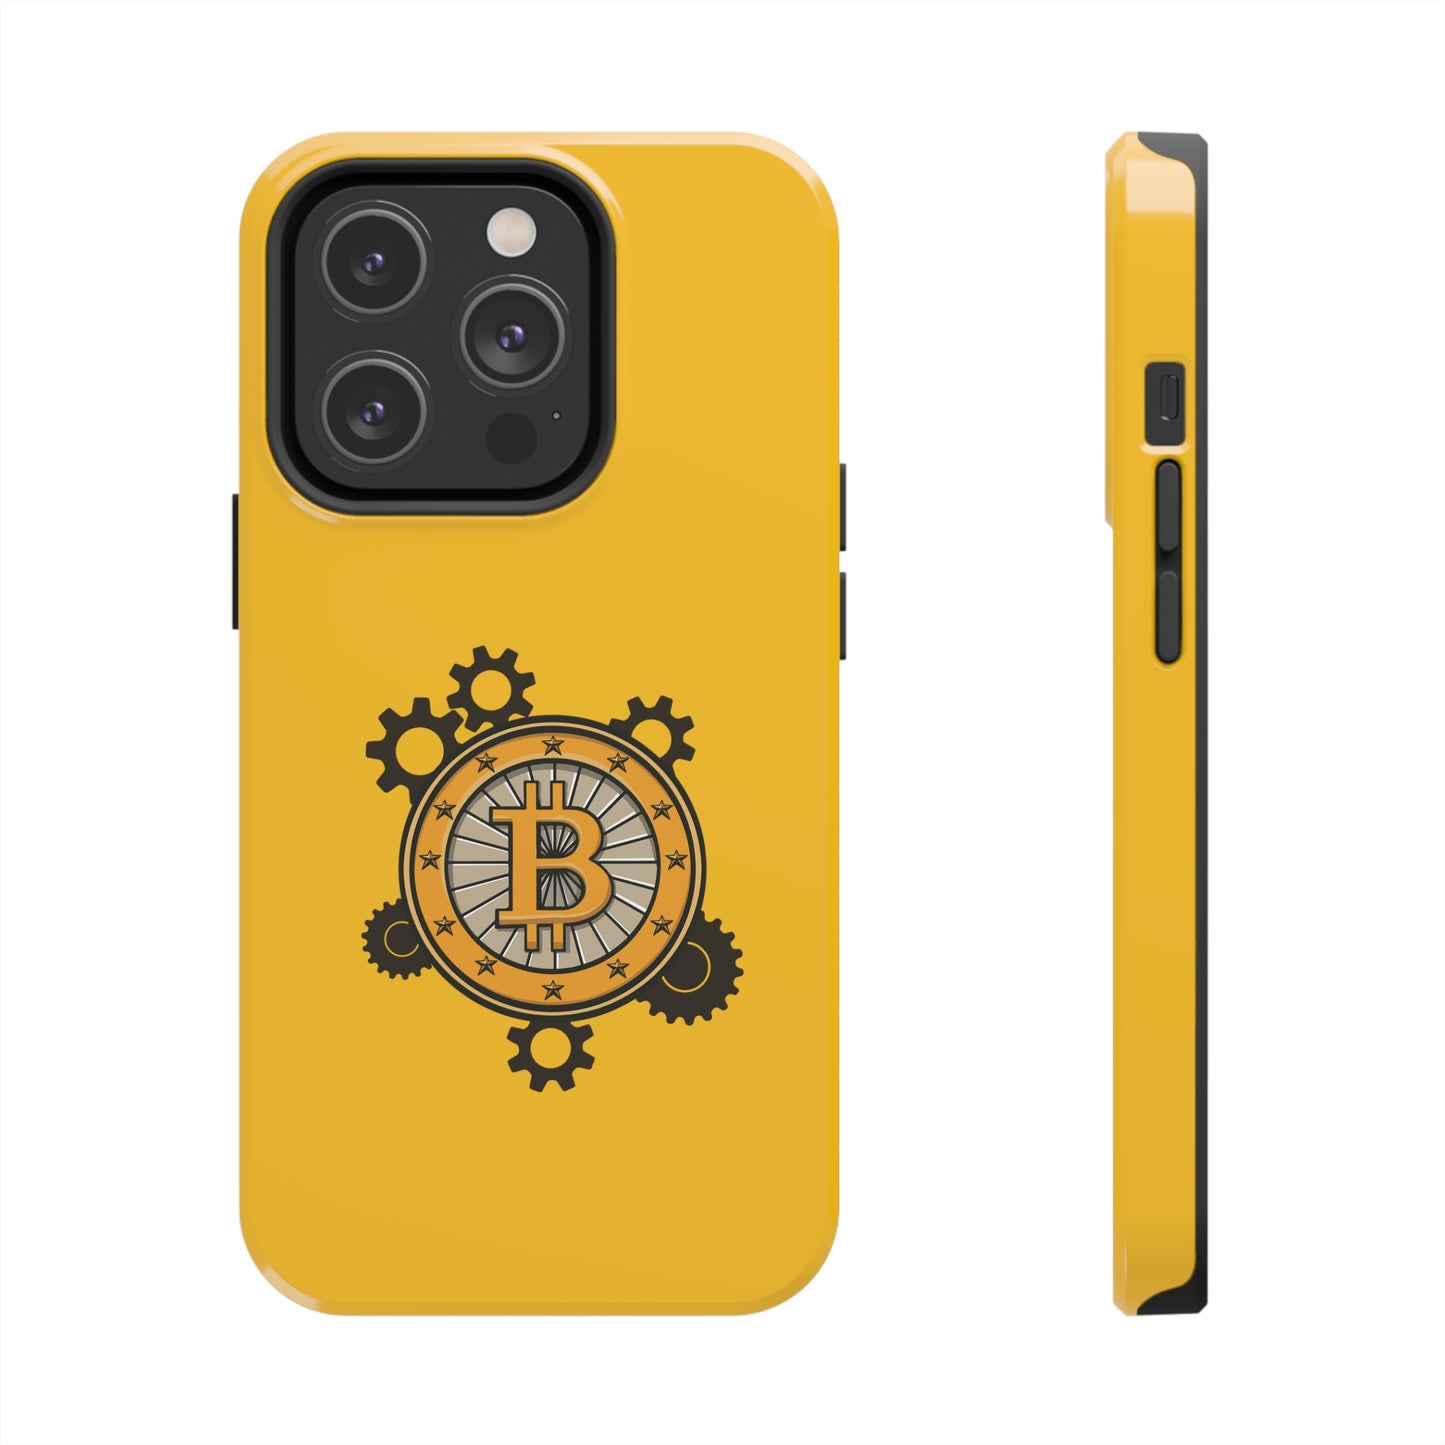 Tough Bitcoin Wheel Phone Cases